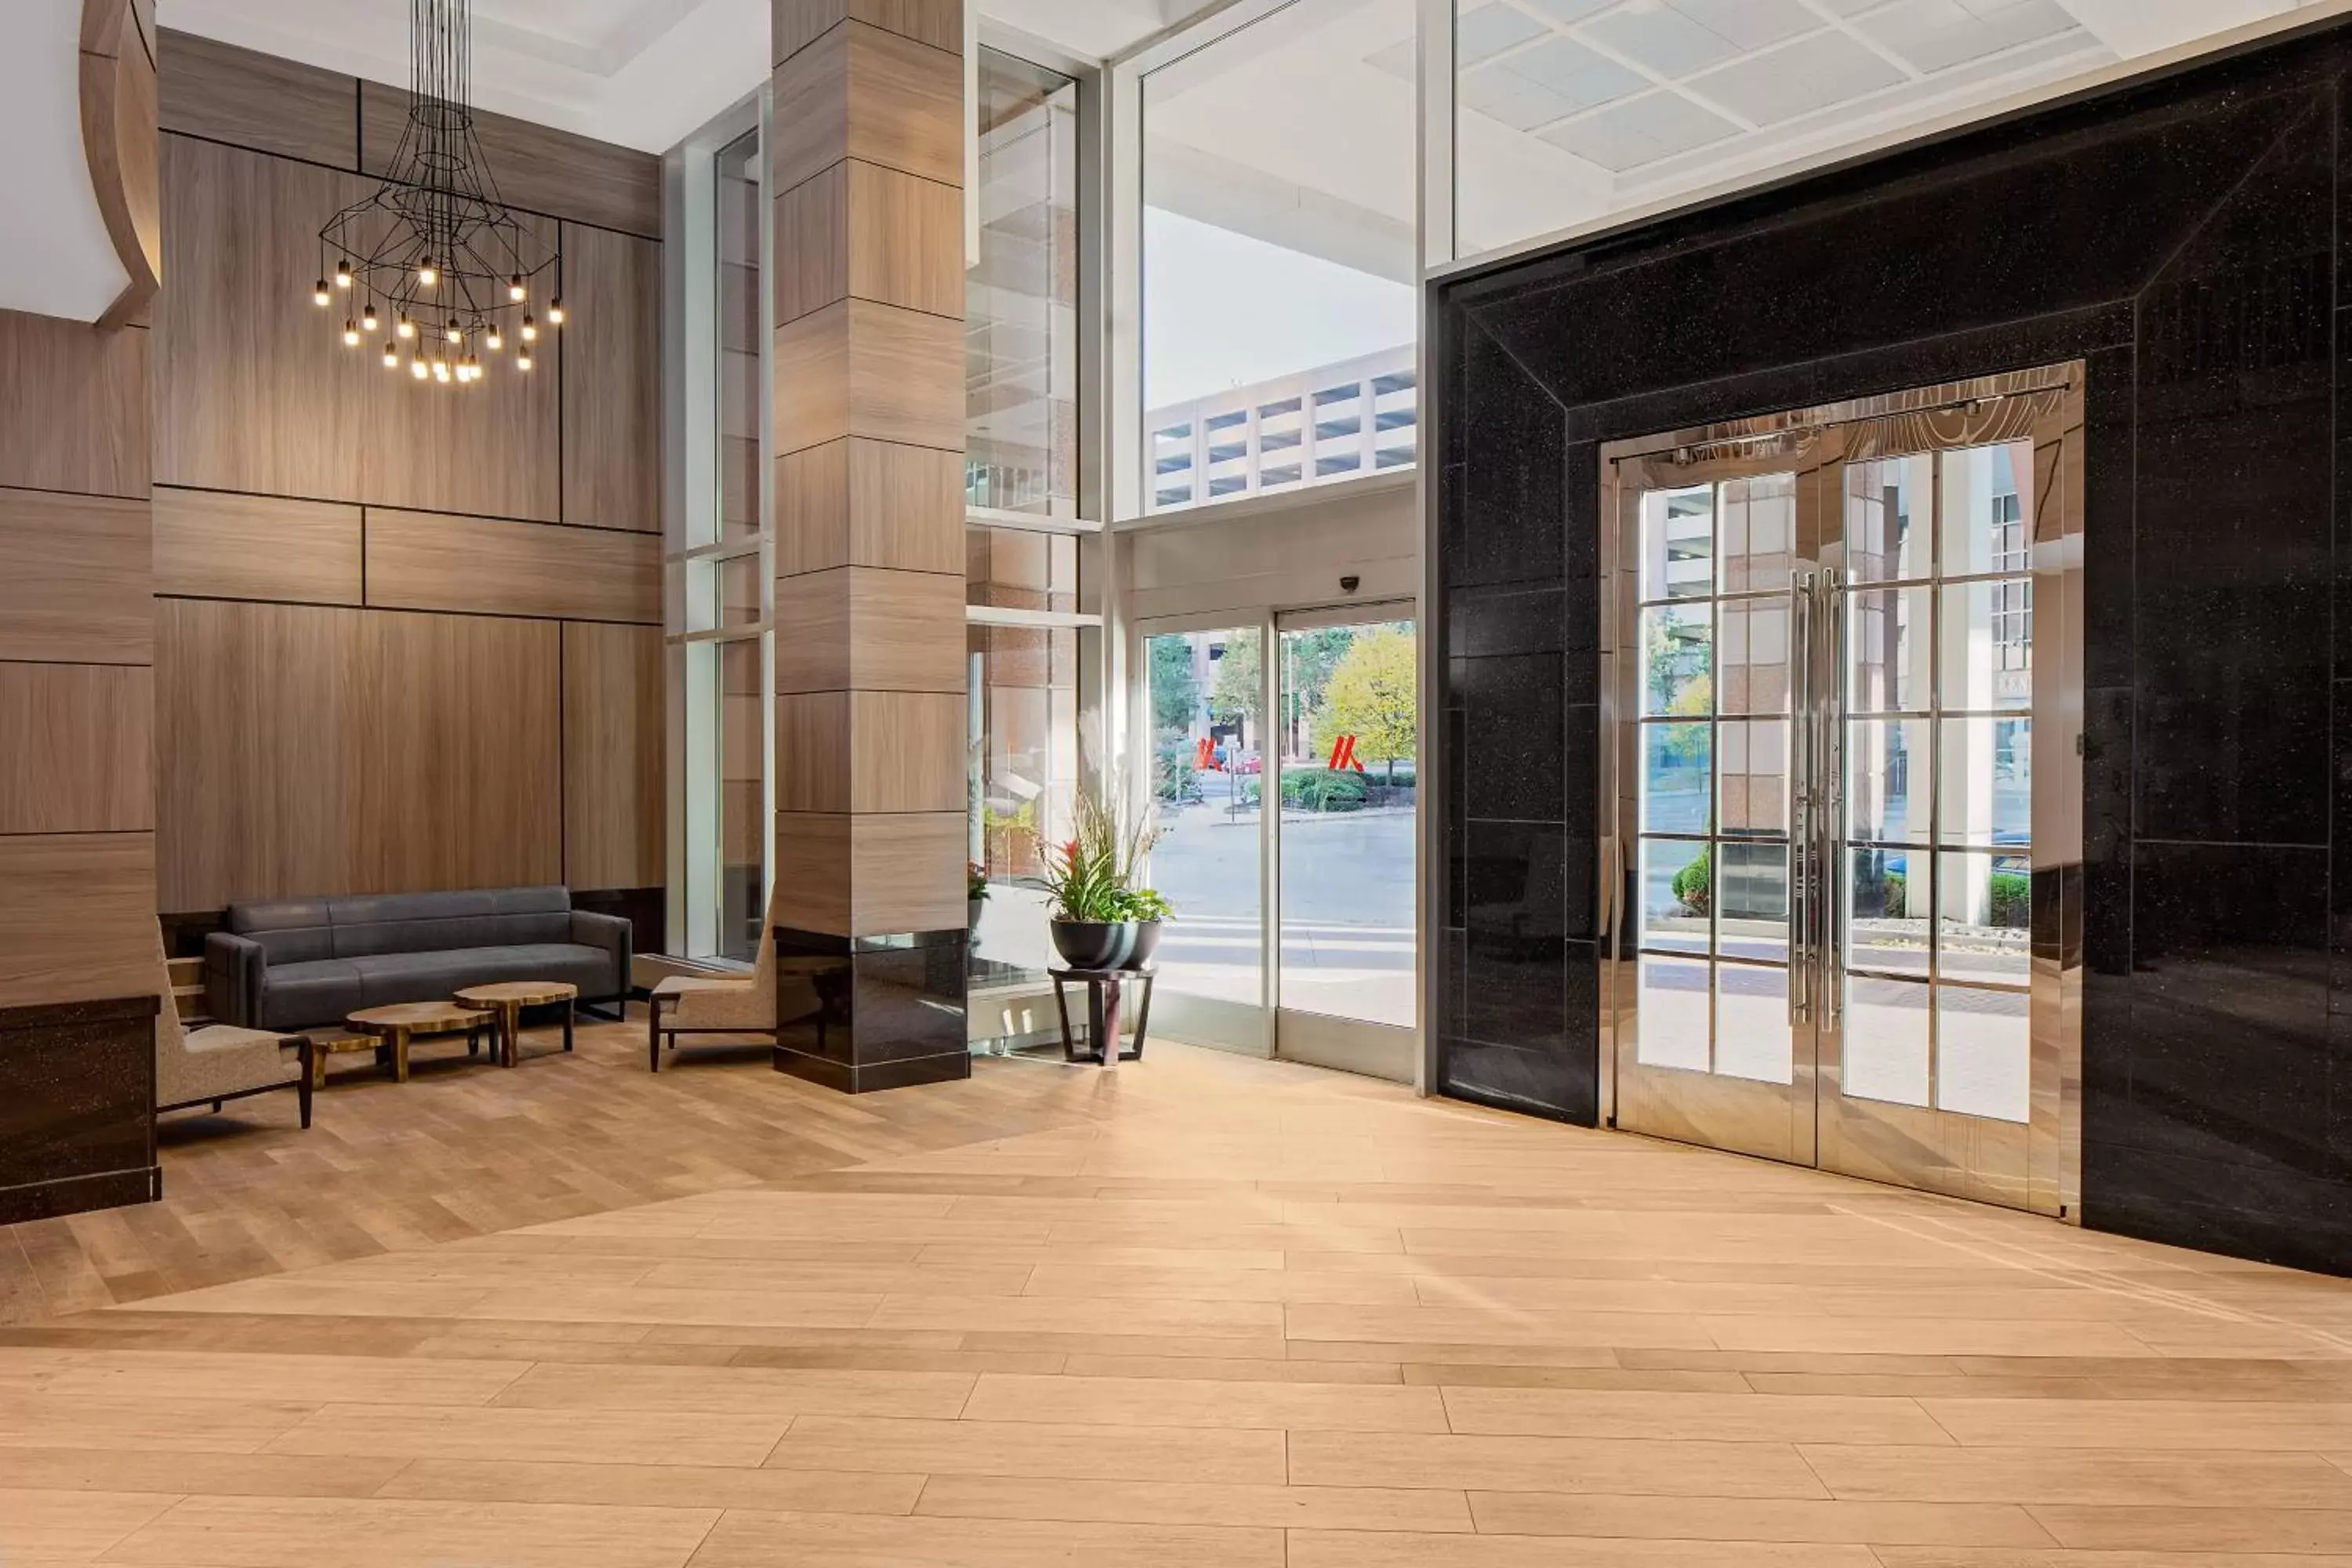 Lobby or reception, Lobby/Reception in Cincinnati Marriott at RiverCenter